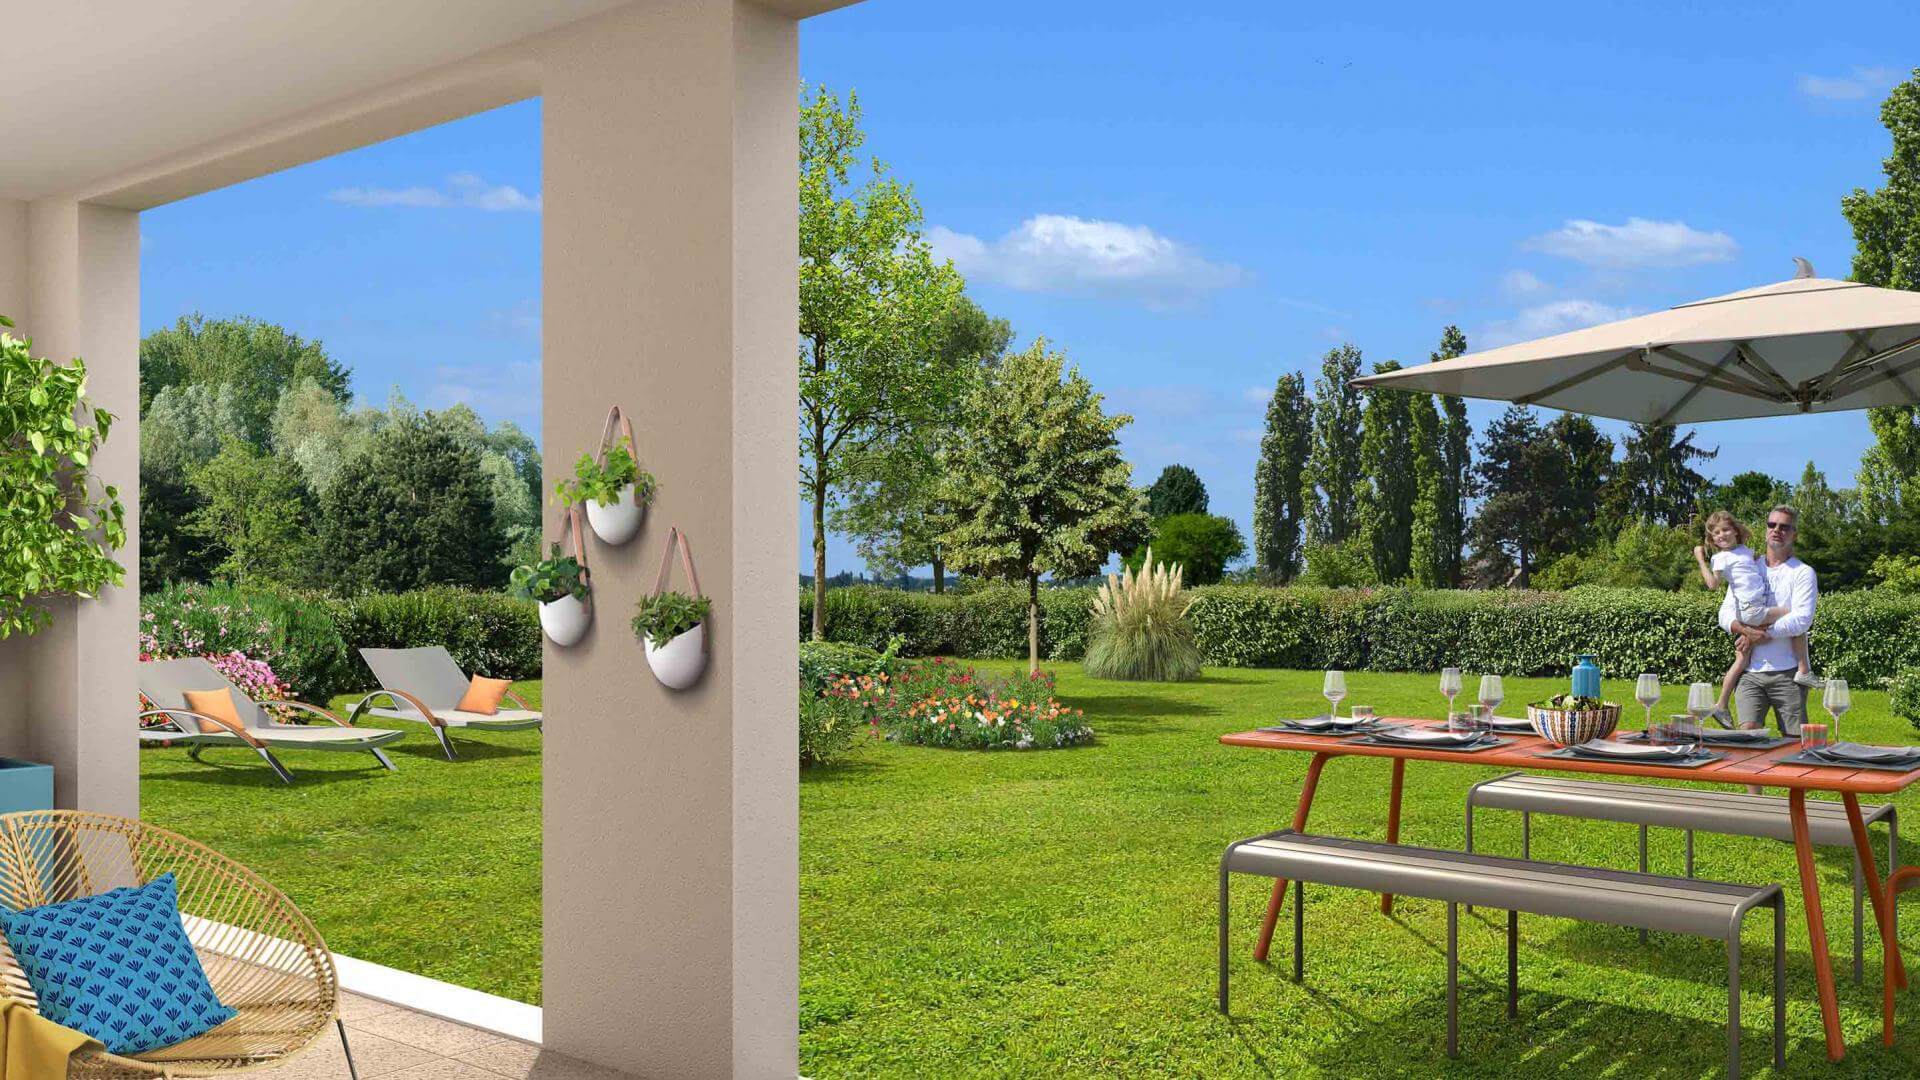 3 pièces avec jardin offre frais de notaire offert (3 pièces, 60 m²) Lagny-sur-Marne